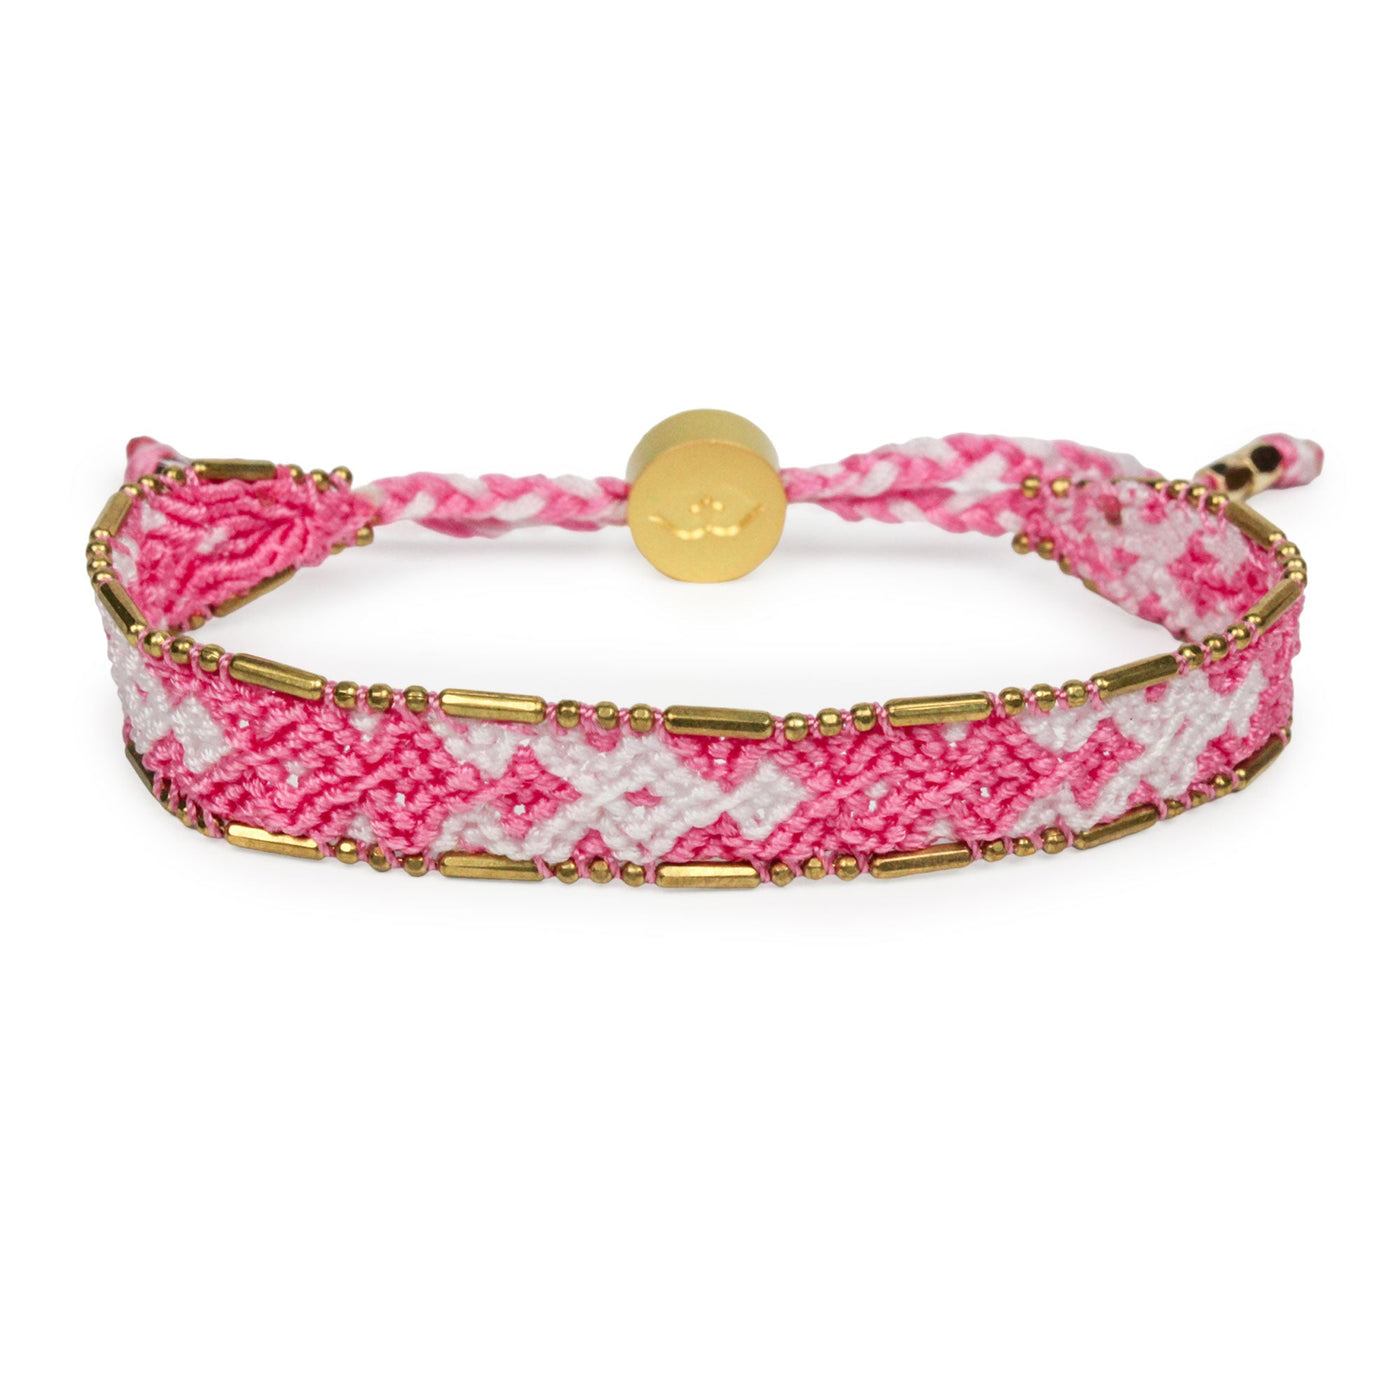 Bali Friendship Bracelet - Pale Pink & White